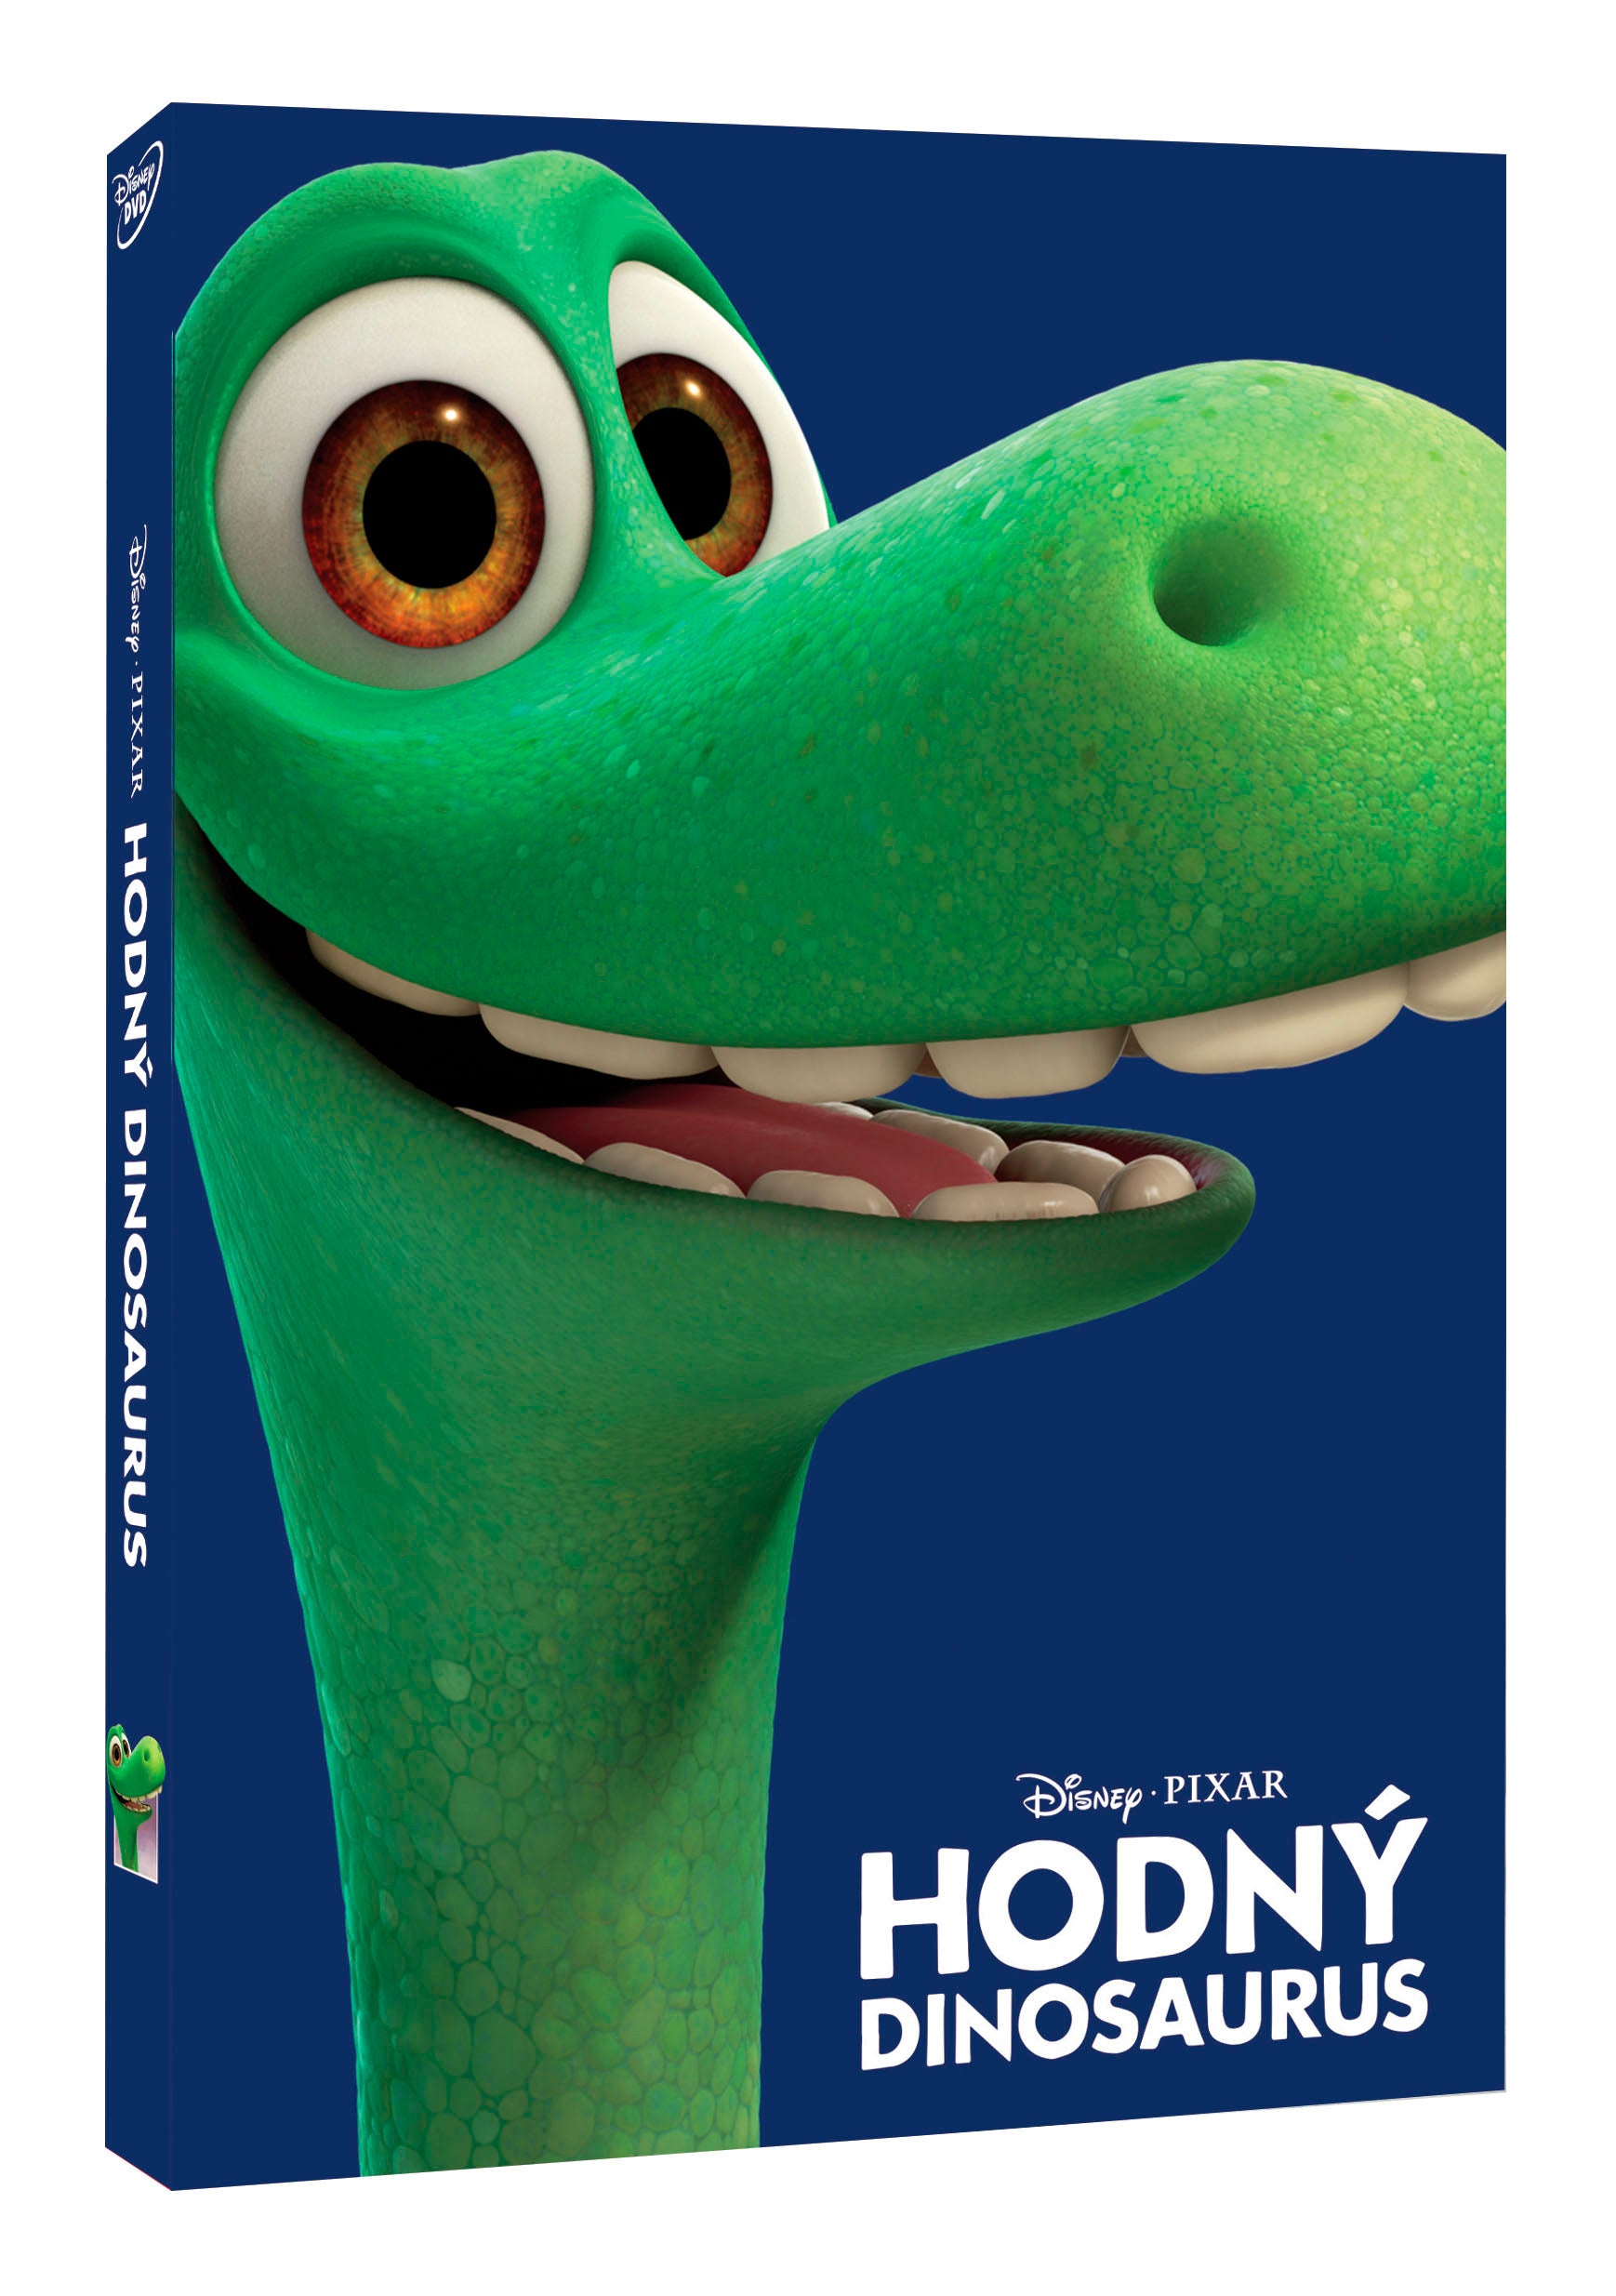 Hodny Dinosaurus - Disney Pixar Edice (Der gute Dinosaurier